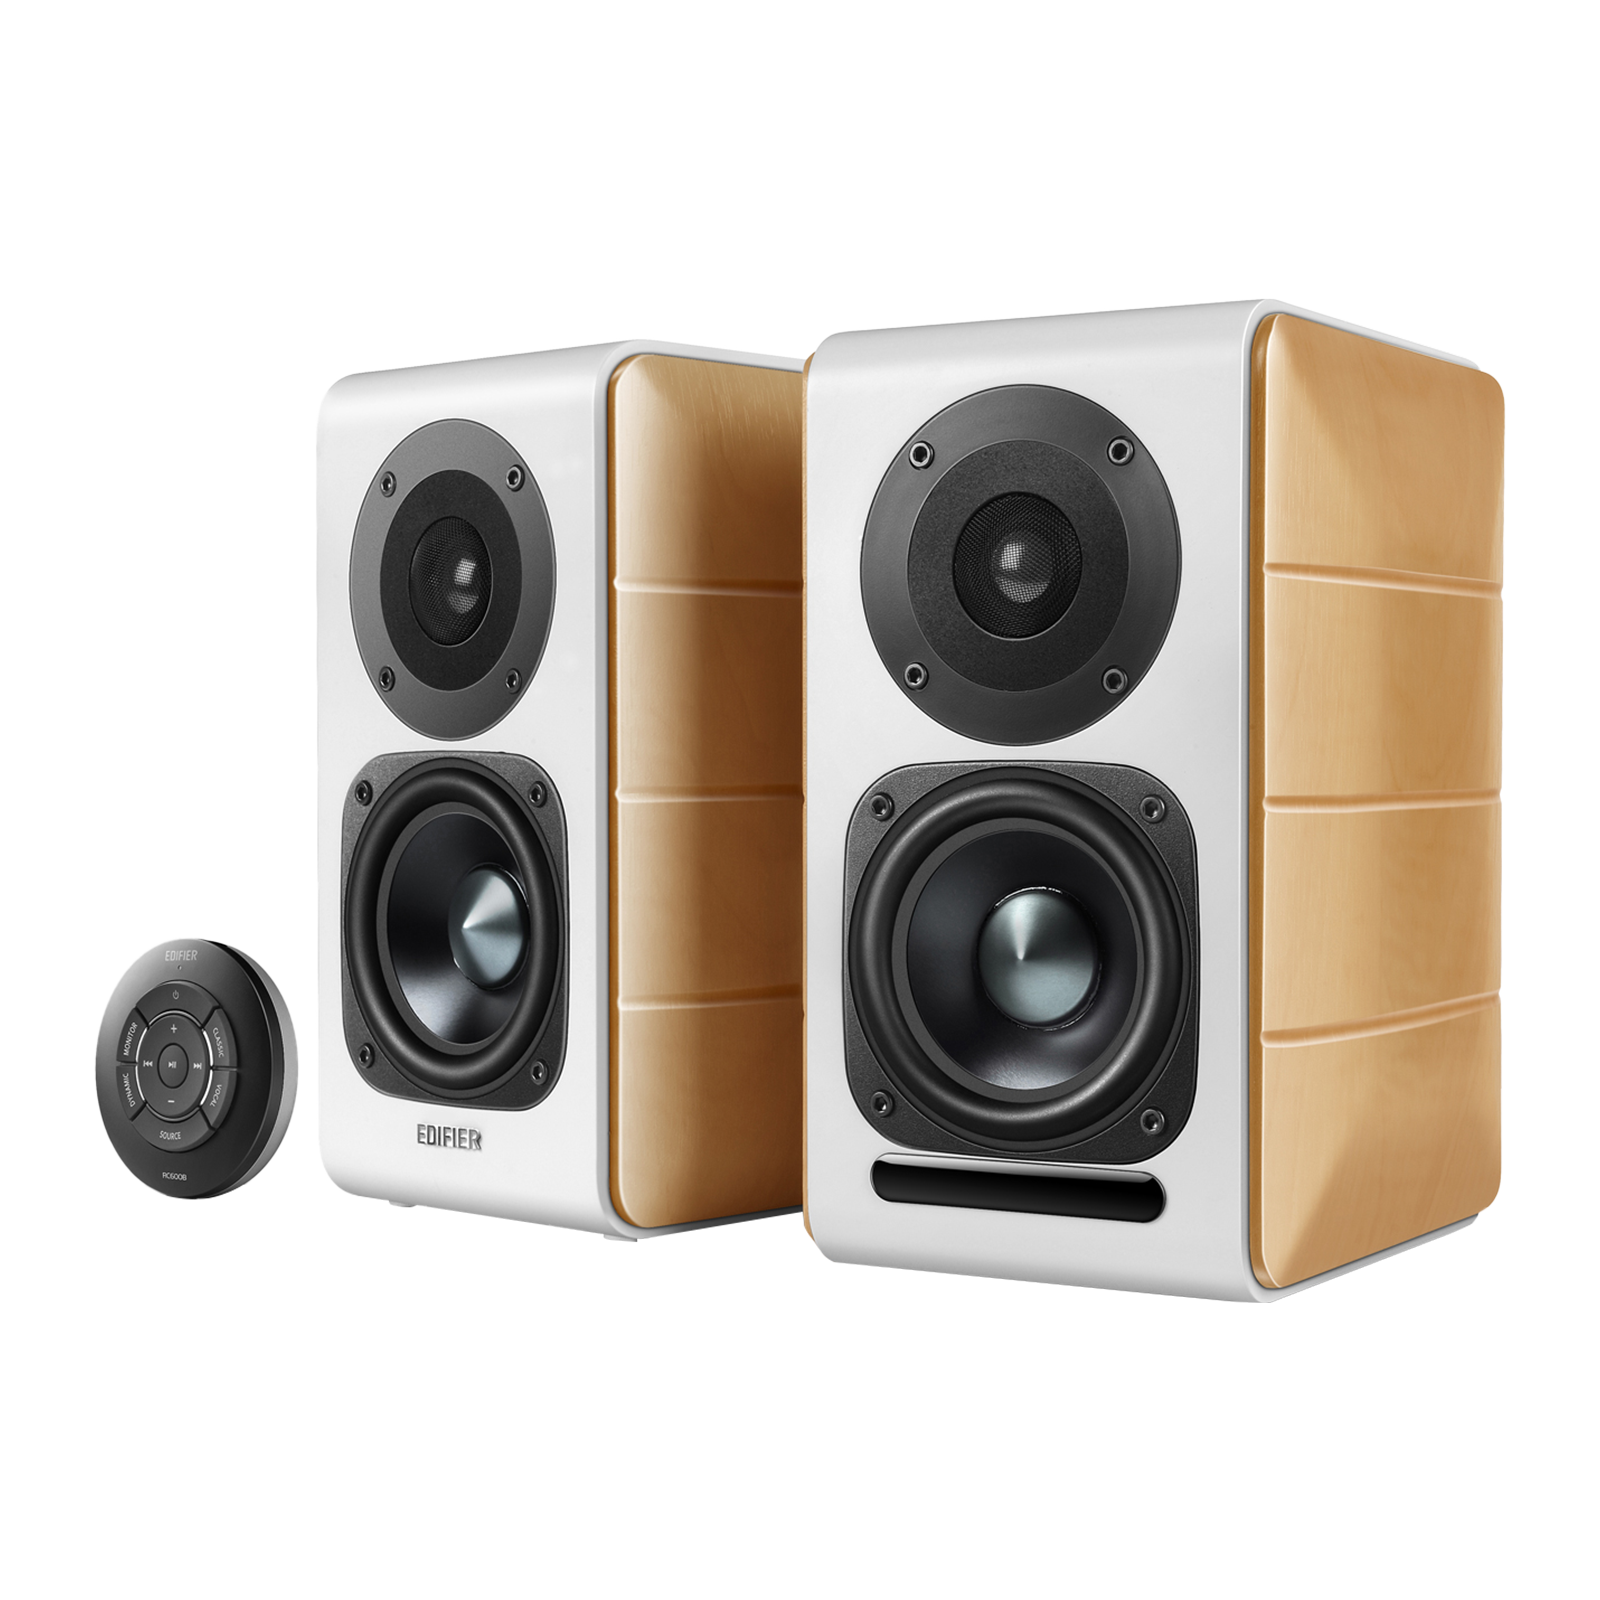 Haut-parleurs amplifiés certifiés audio haute résolution S880DB